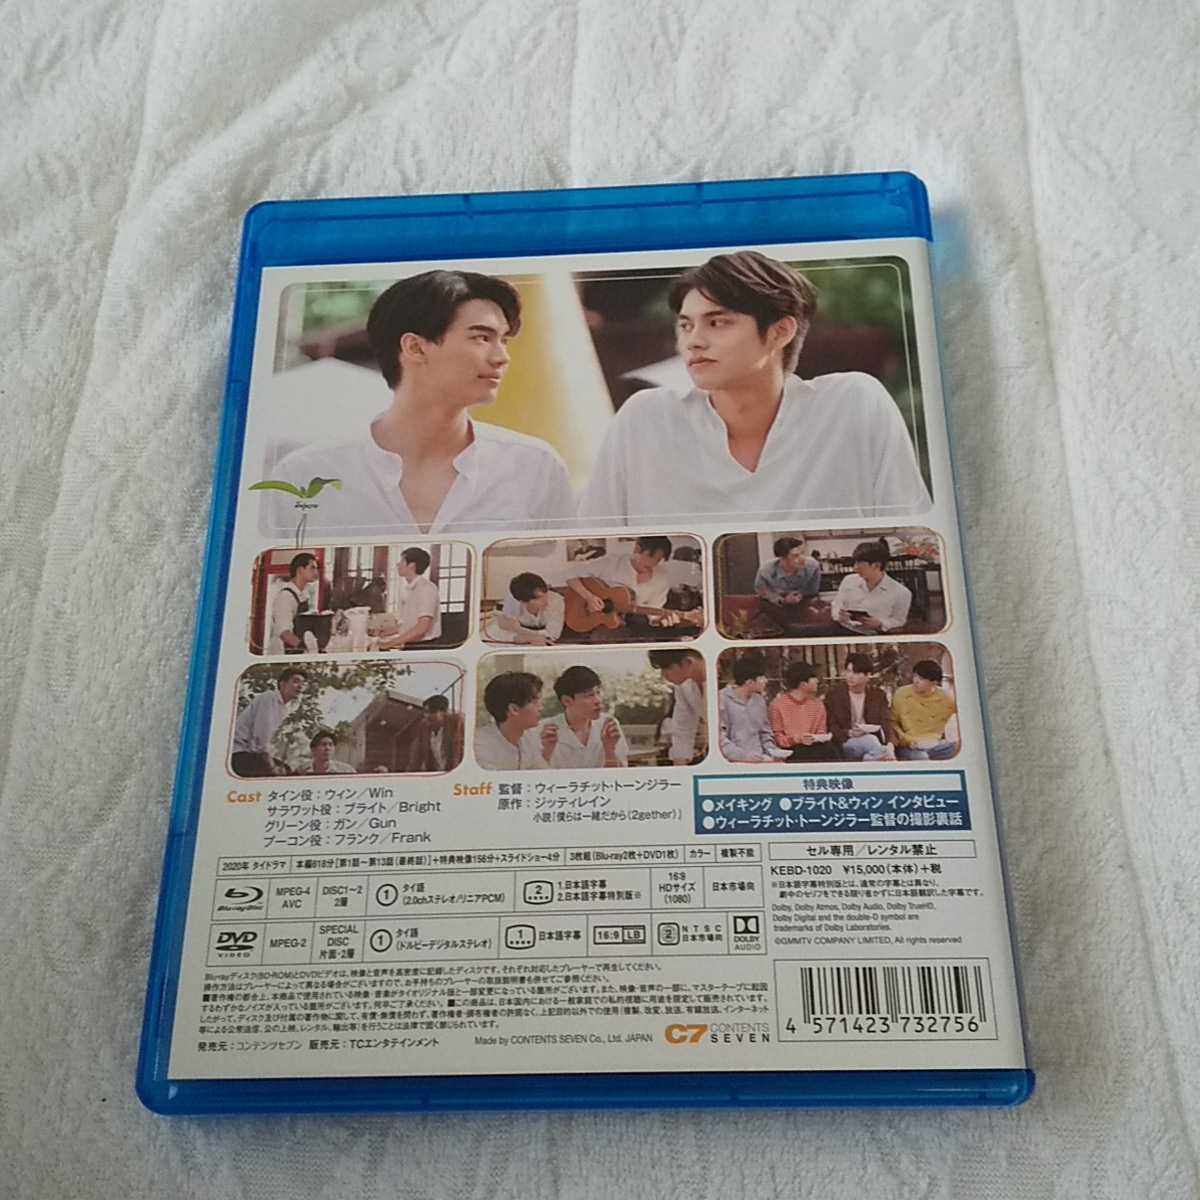 送料込 美品 2gether Blu-ray BOX(通常版)3枚組(Blu-ray Disc) BrightWin ブライト ウィン タイドラマ